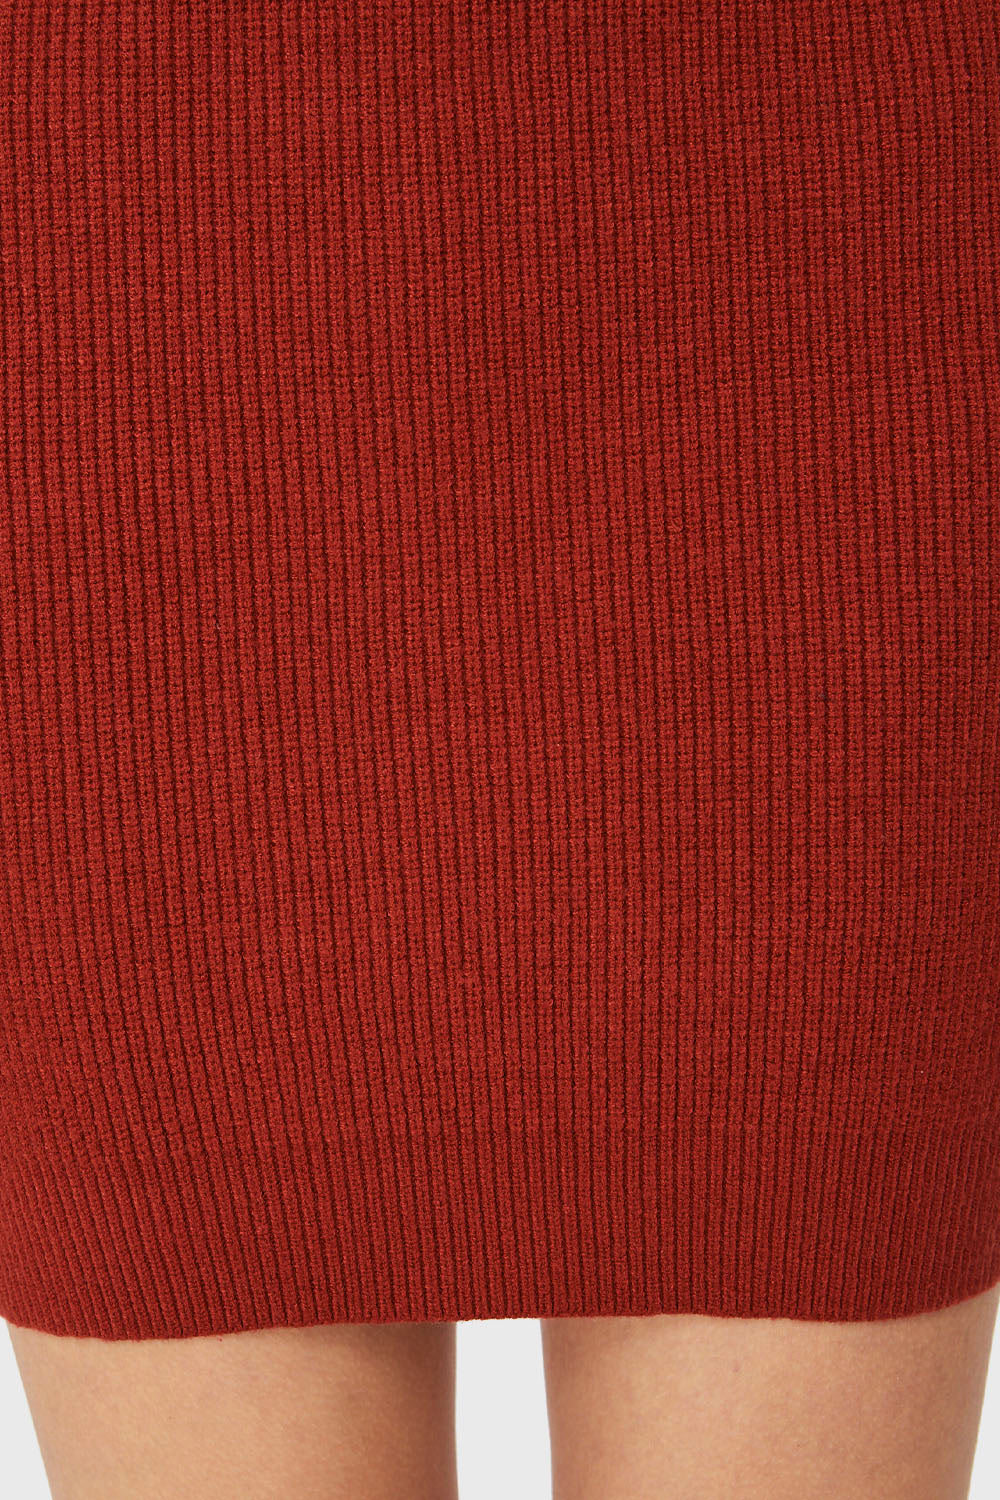 Sweater Vestido Cuello V Rojo Ladrillo